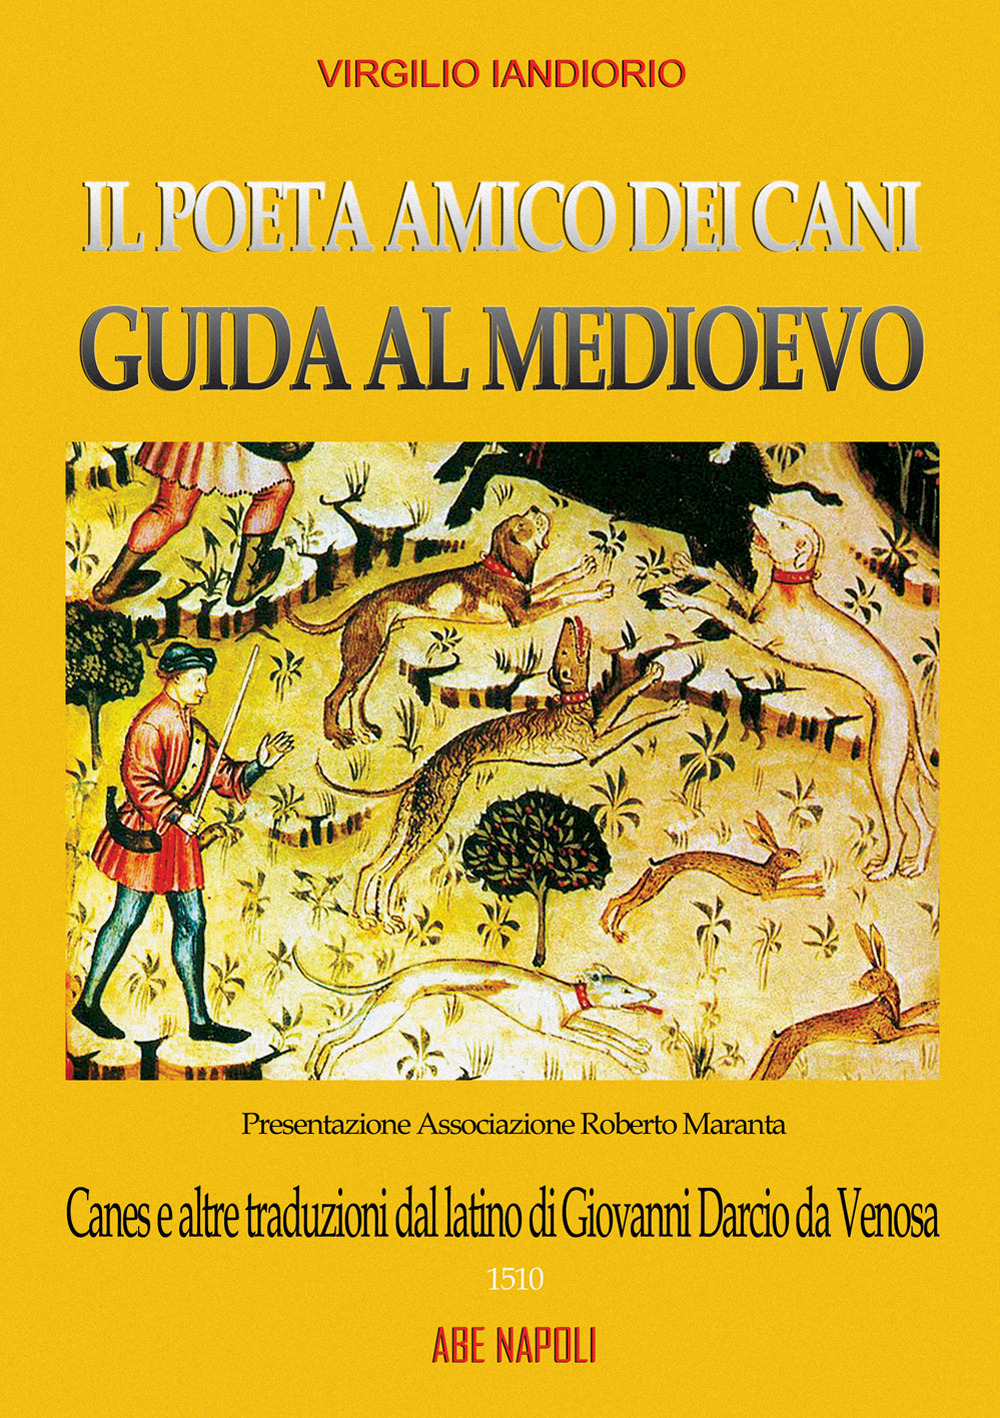 Il poeta amico dei cani, guide al Medioevo: Canes e altre traduzioni dal latino di Giovanni Darcio da Venosa